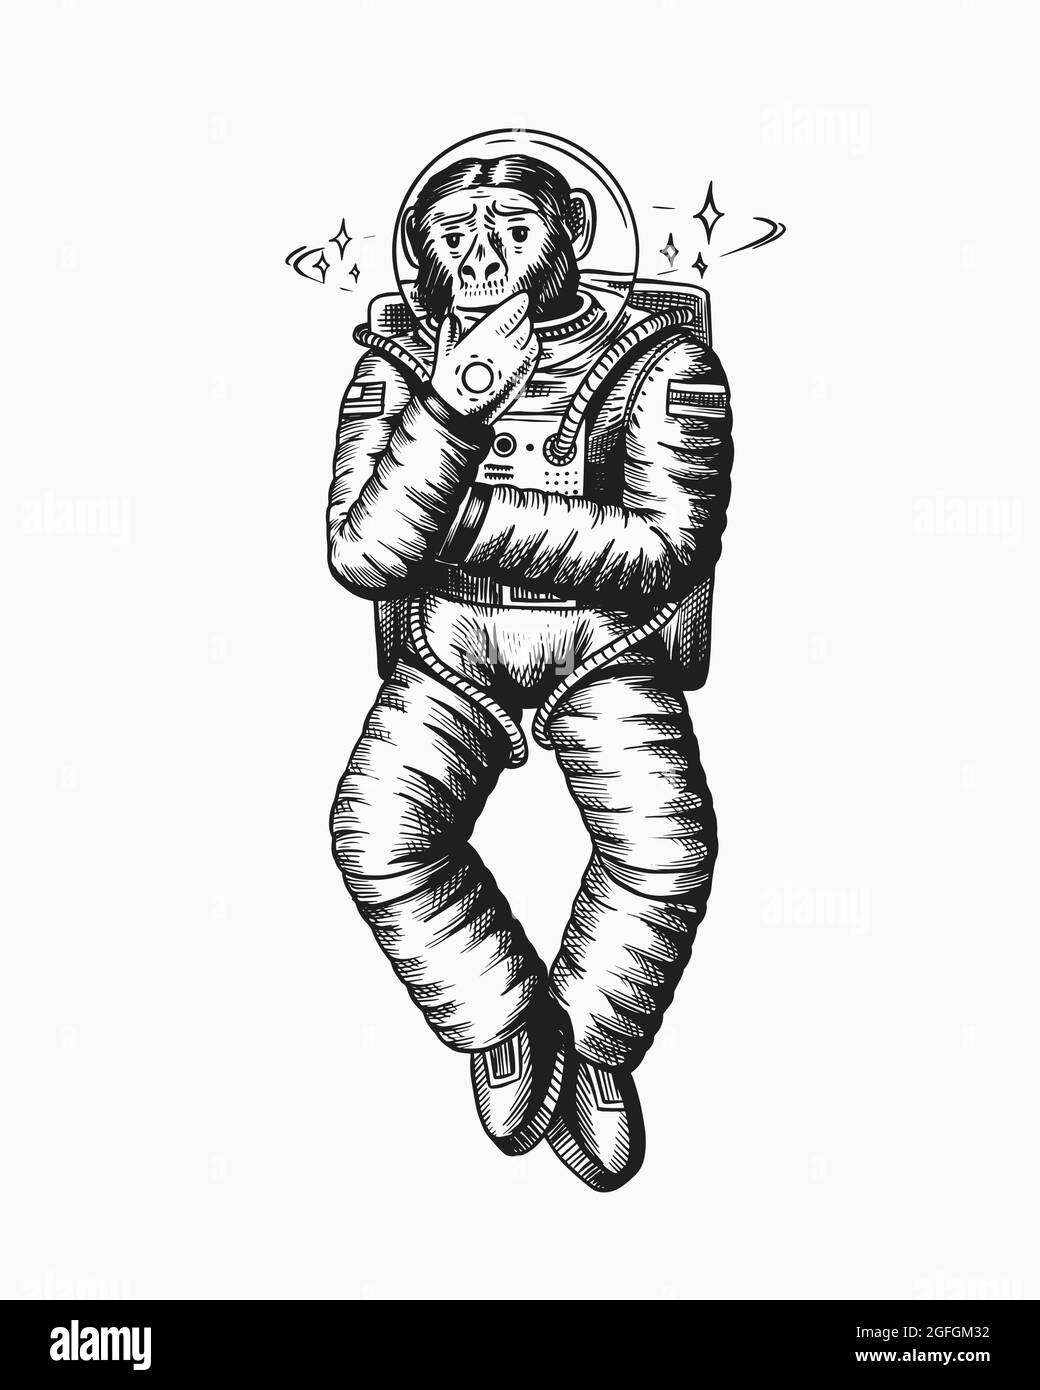 Astronaute de singe. Posture pensive et réfléchie. Chimpanzé cosmonaute cosmonaute. Animal à la mode. Ancien croquis monochrome gravé à la main Illustration de Vecteur